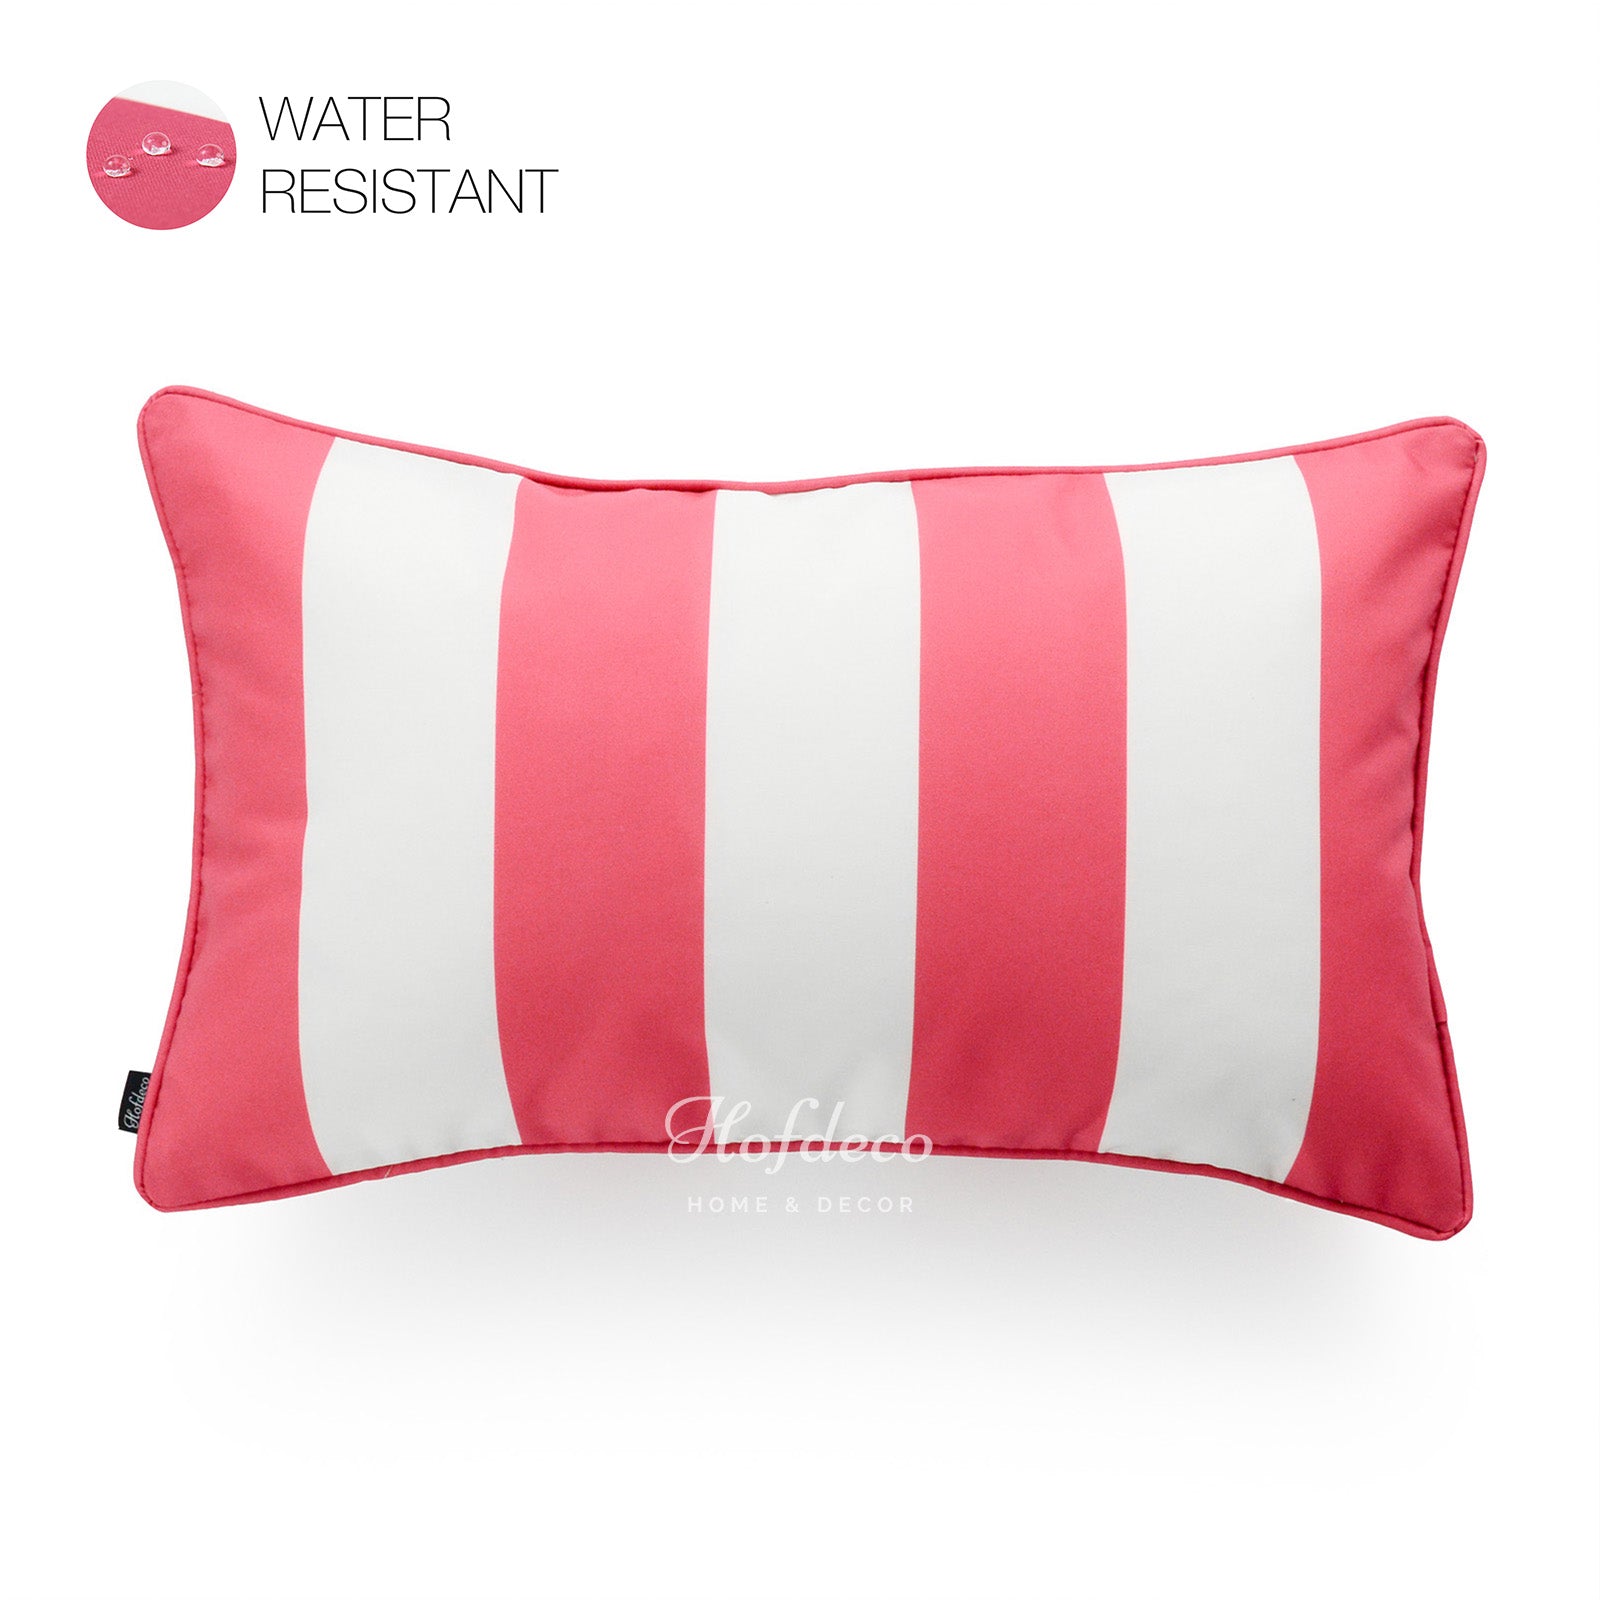 Hot Pink Outdoor Lumbar Pillow Cover, Stripes, 12"x20"